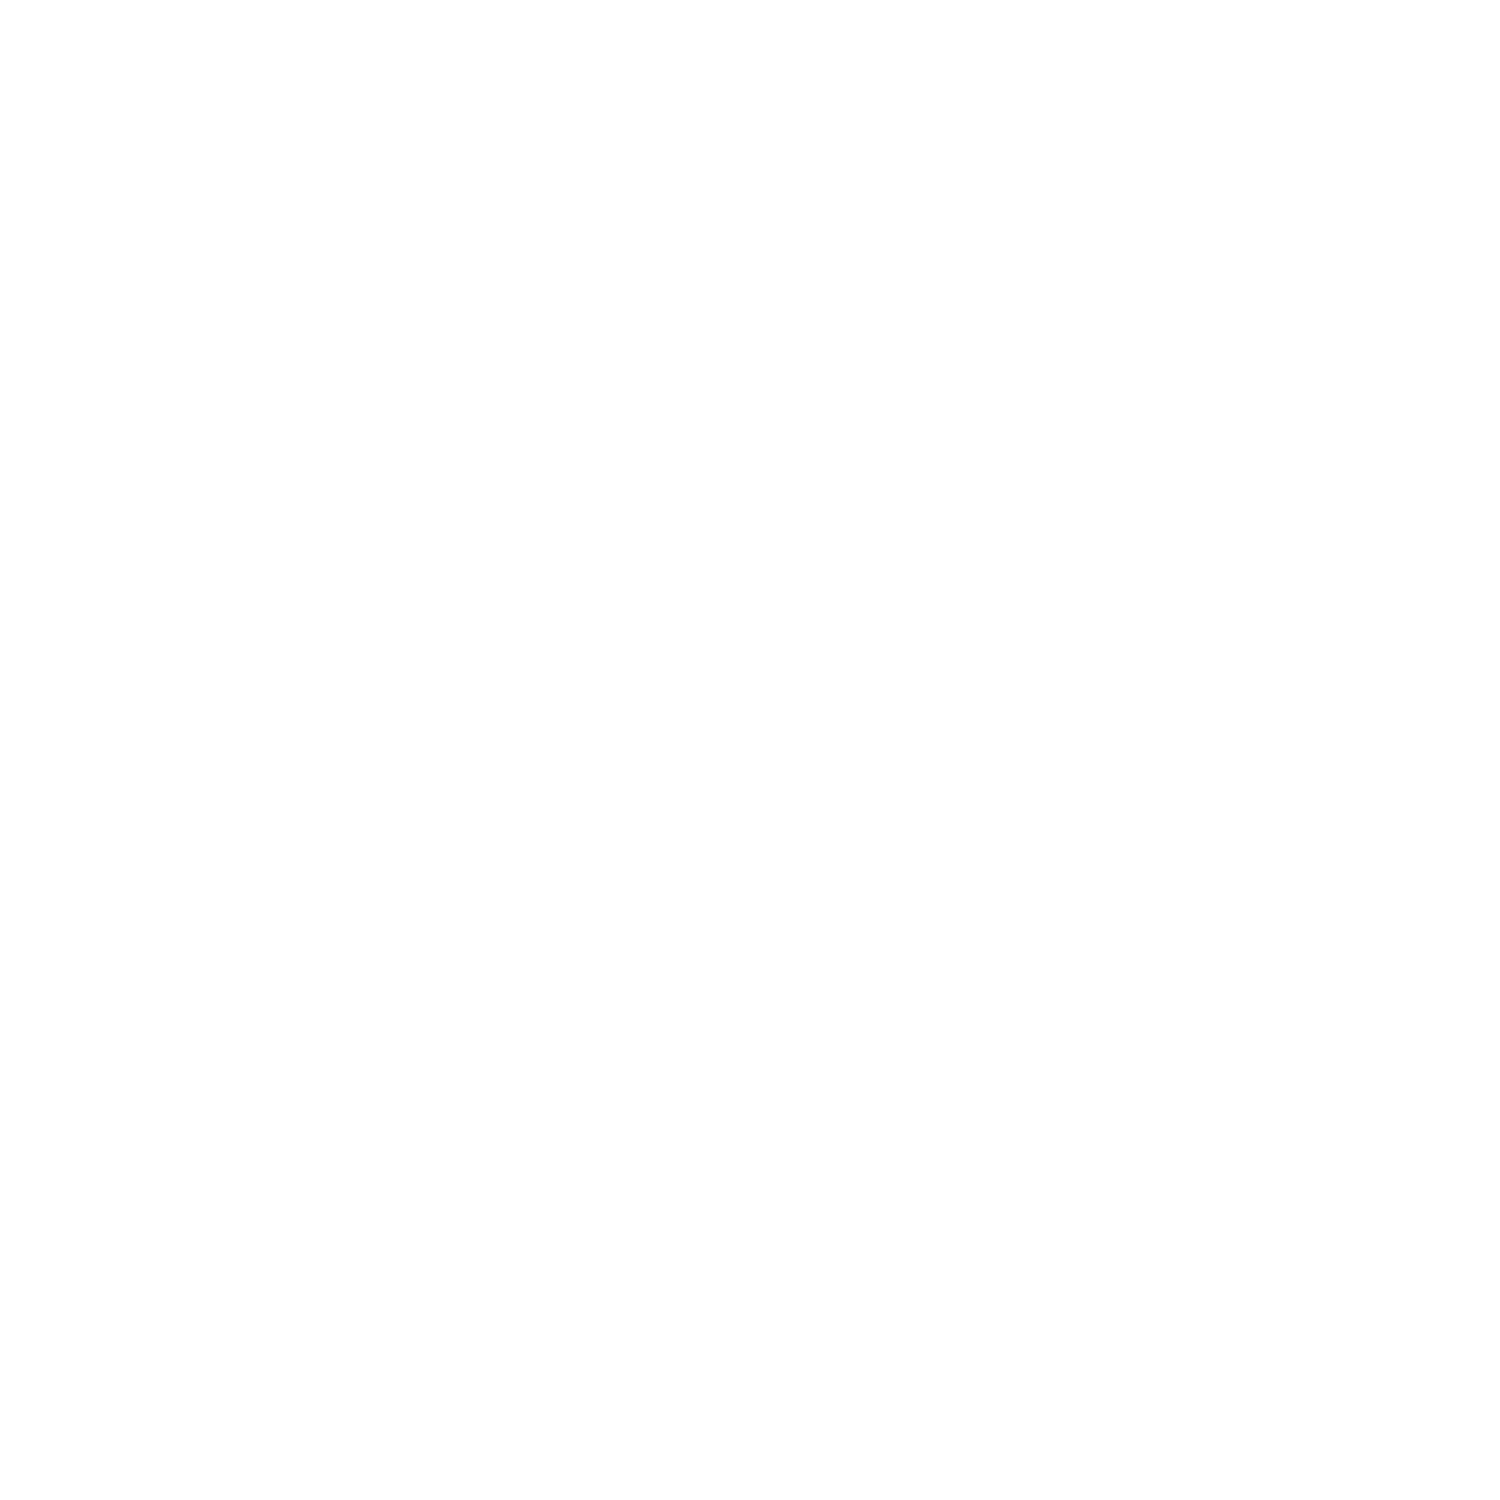 Fresh Clean Threads